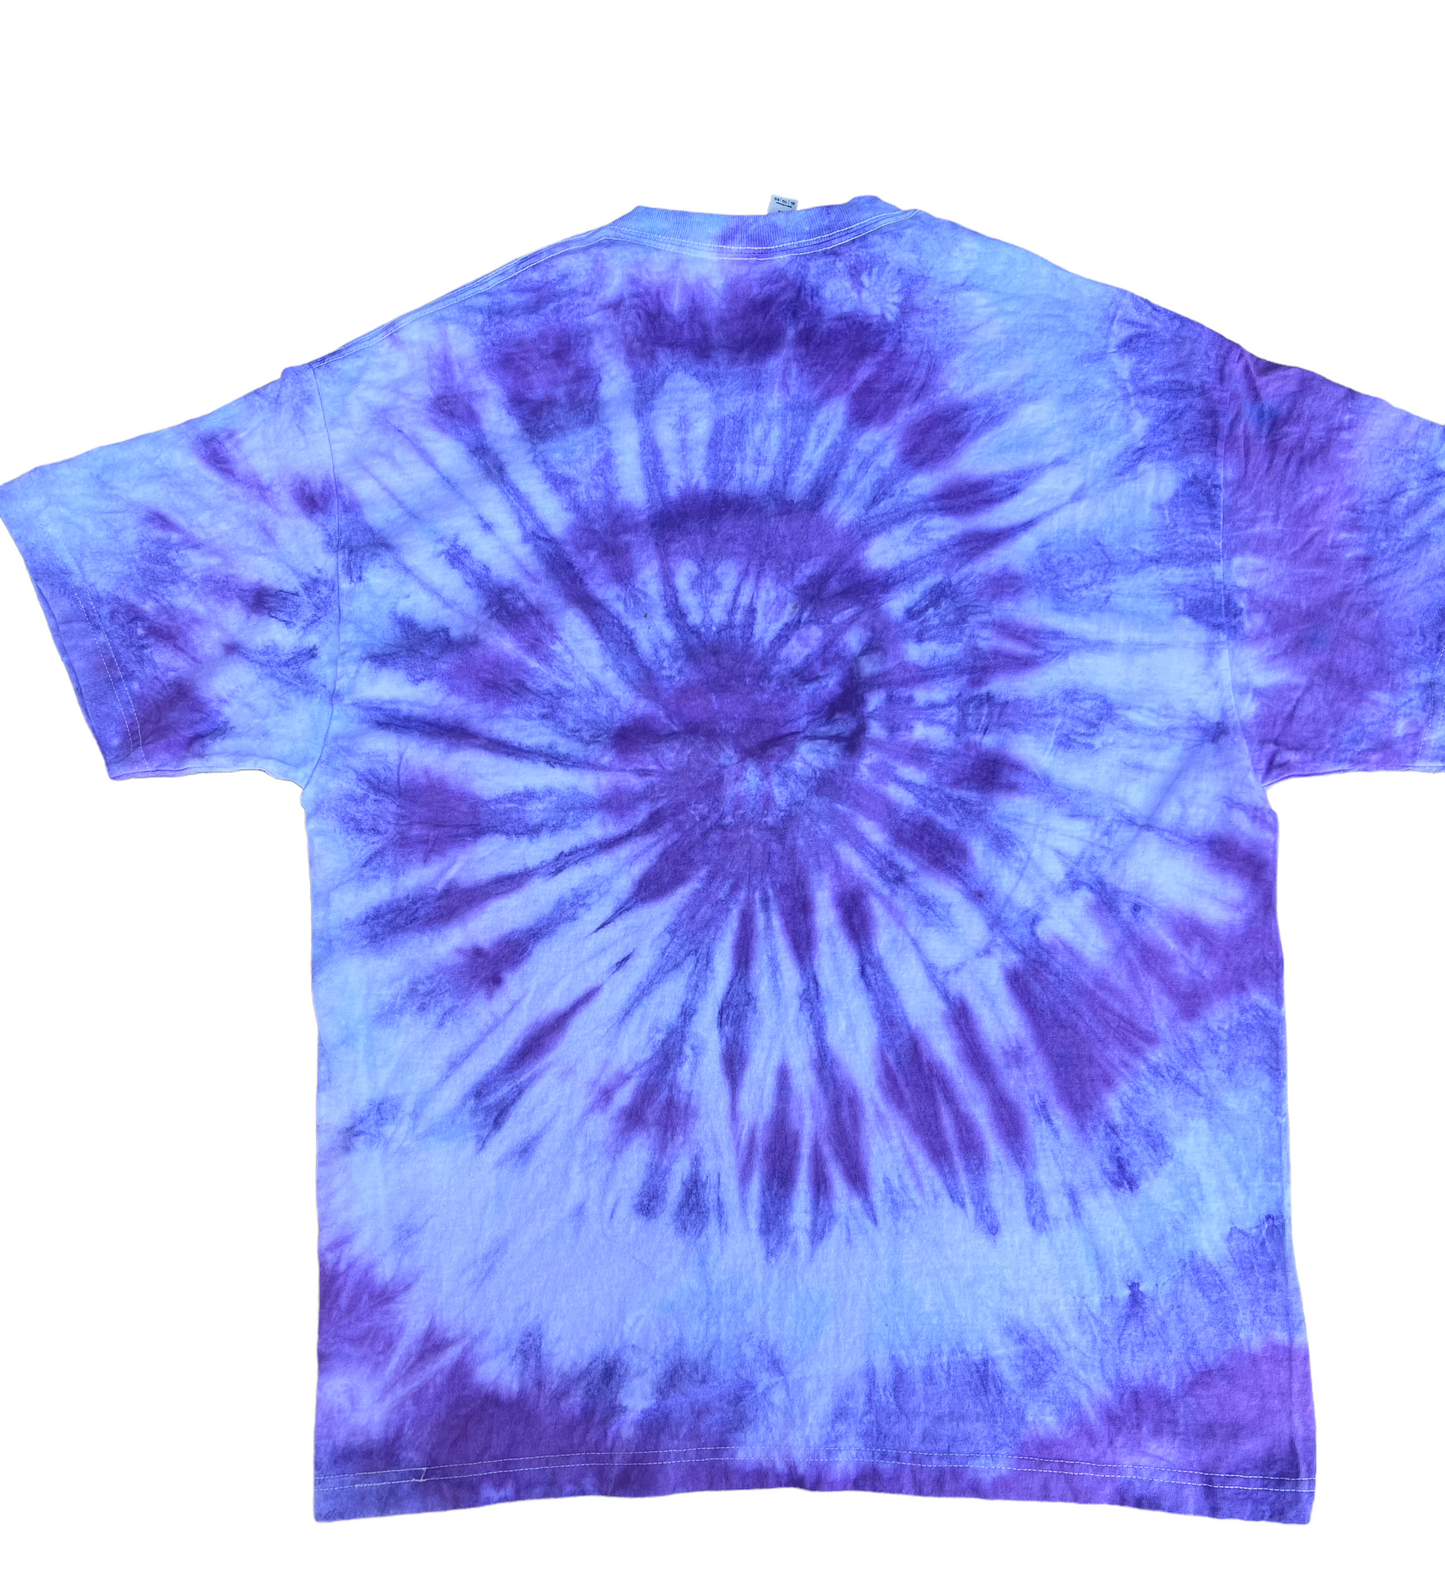 XL - northbound stealie dye shirt